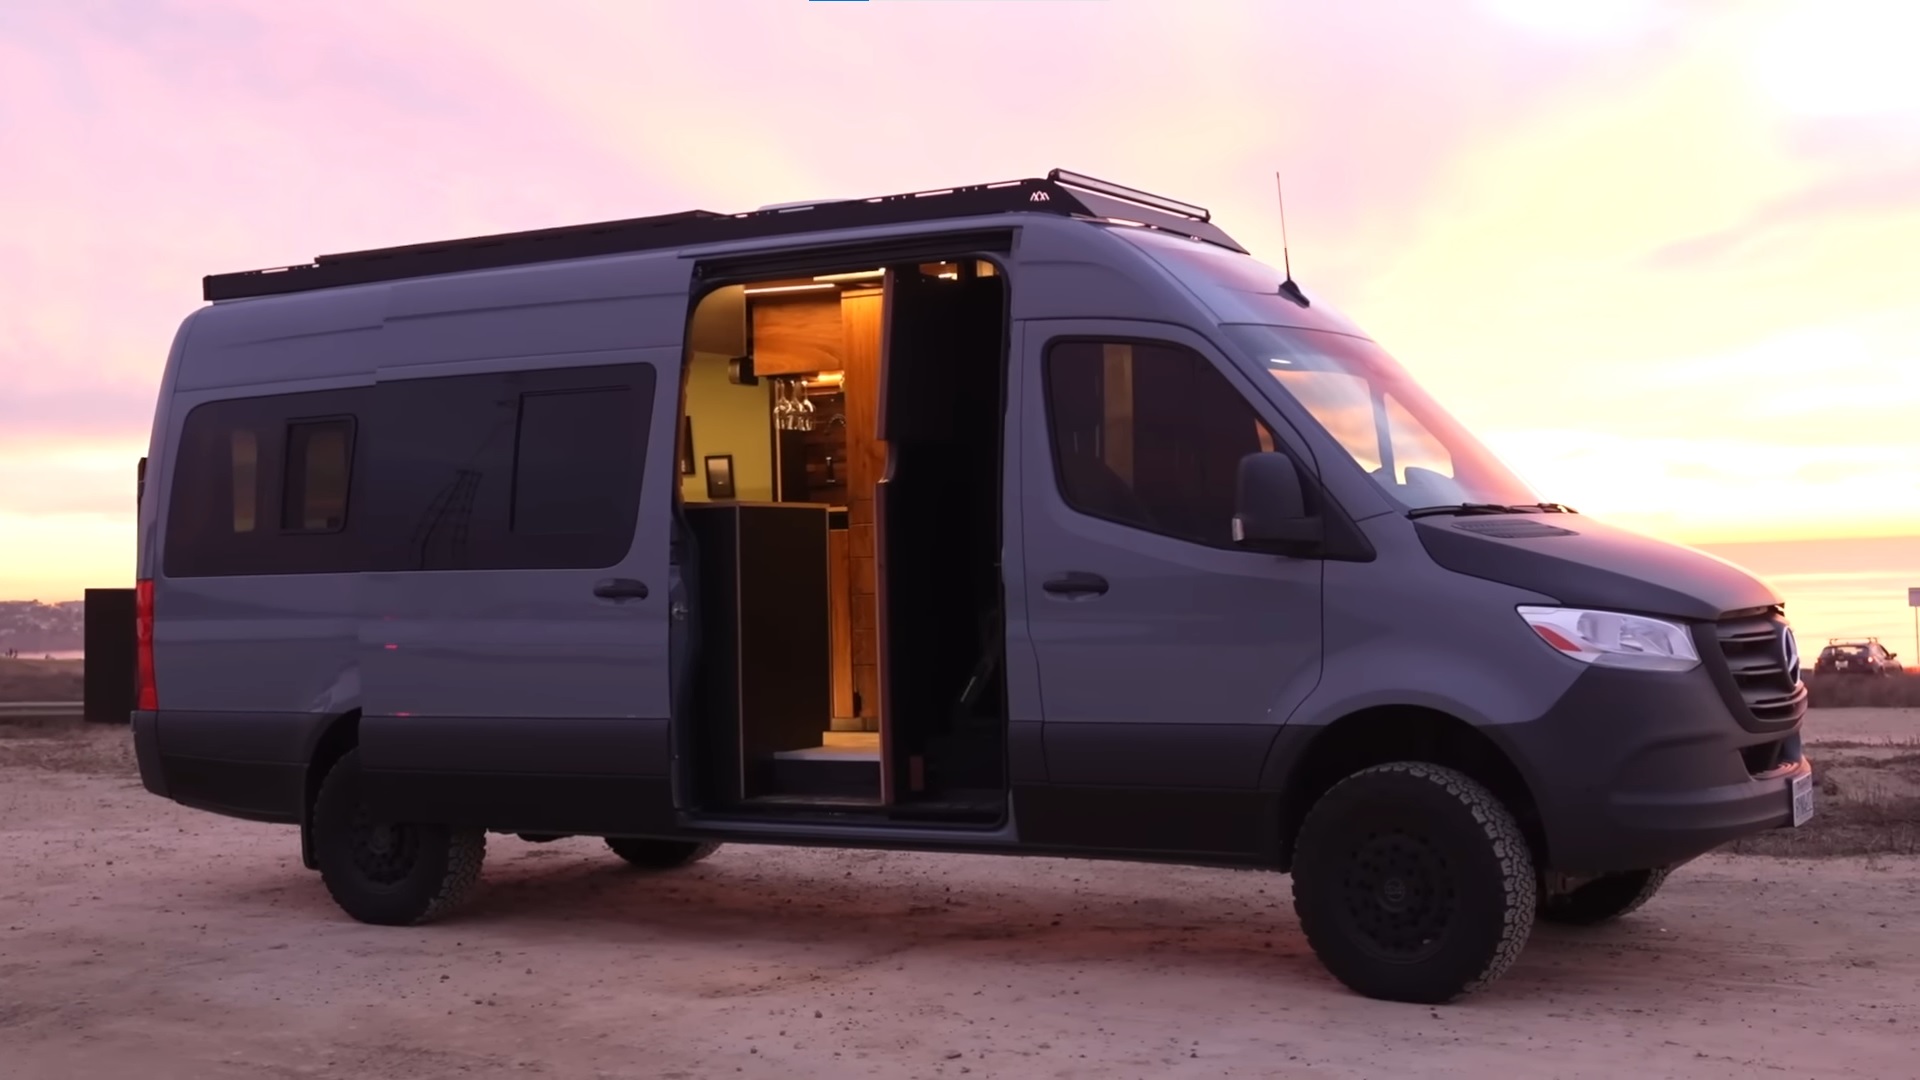 Mercedes Sprinter Camper Vans for Sale — Happy Camper Conversions